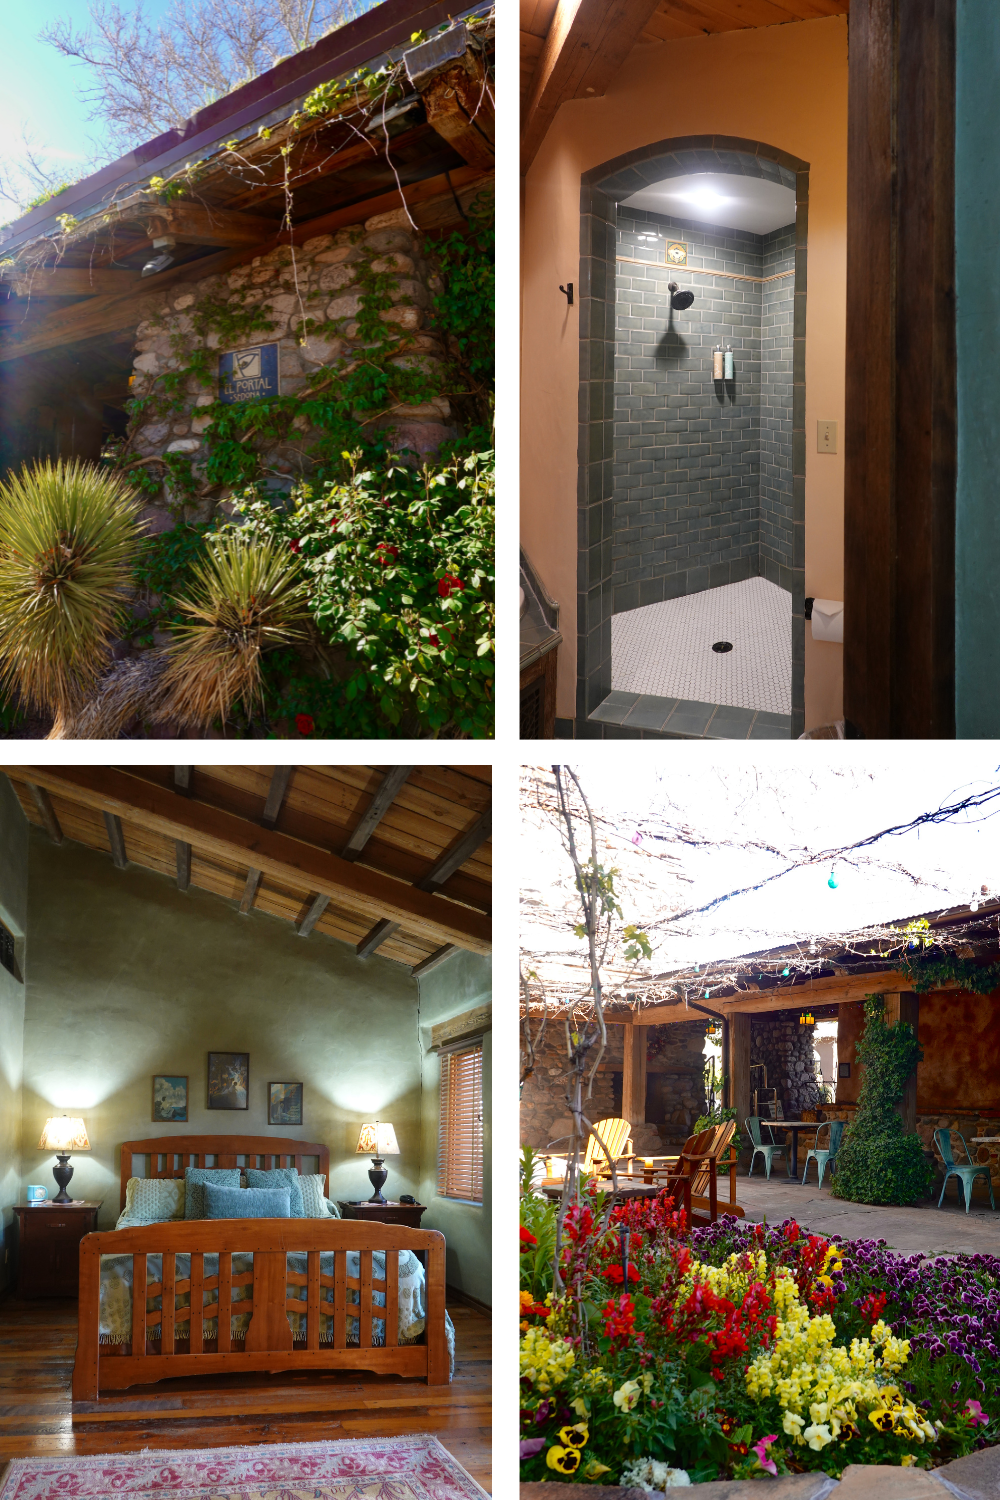 photos of a botique hotel in sedona arizona